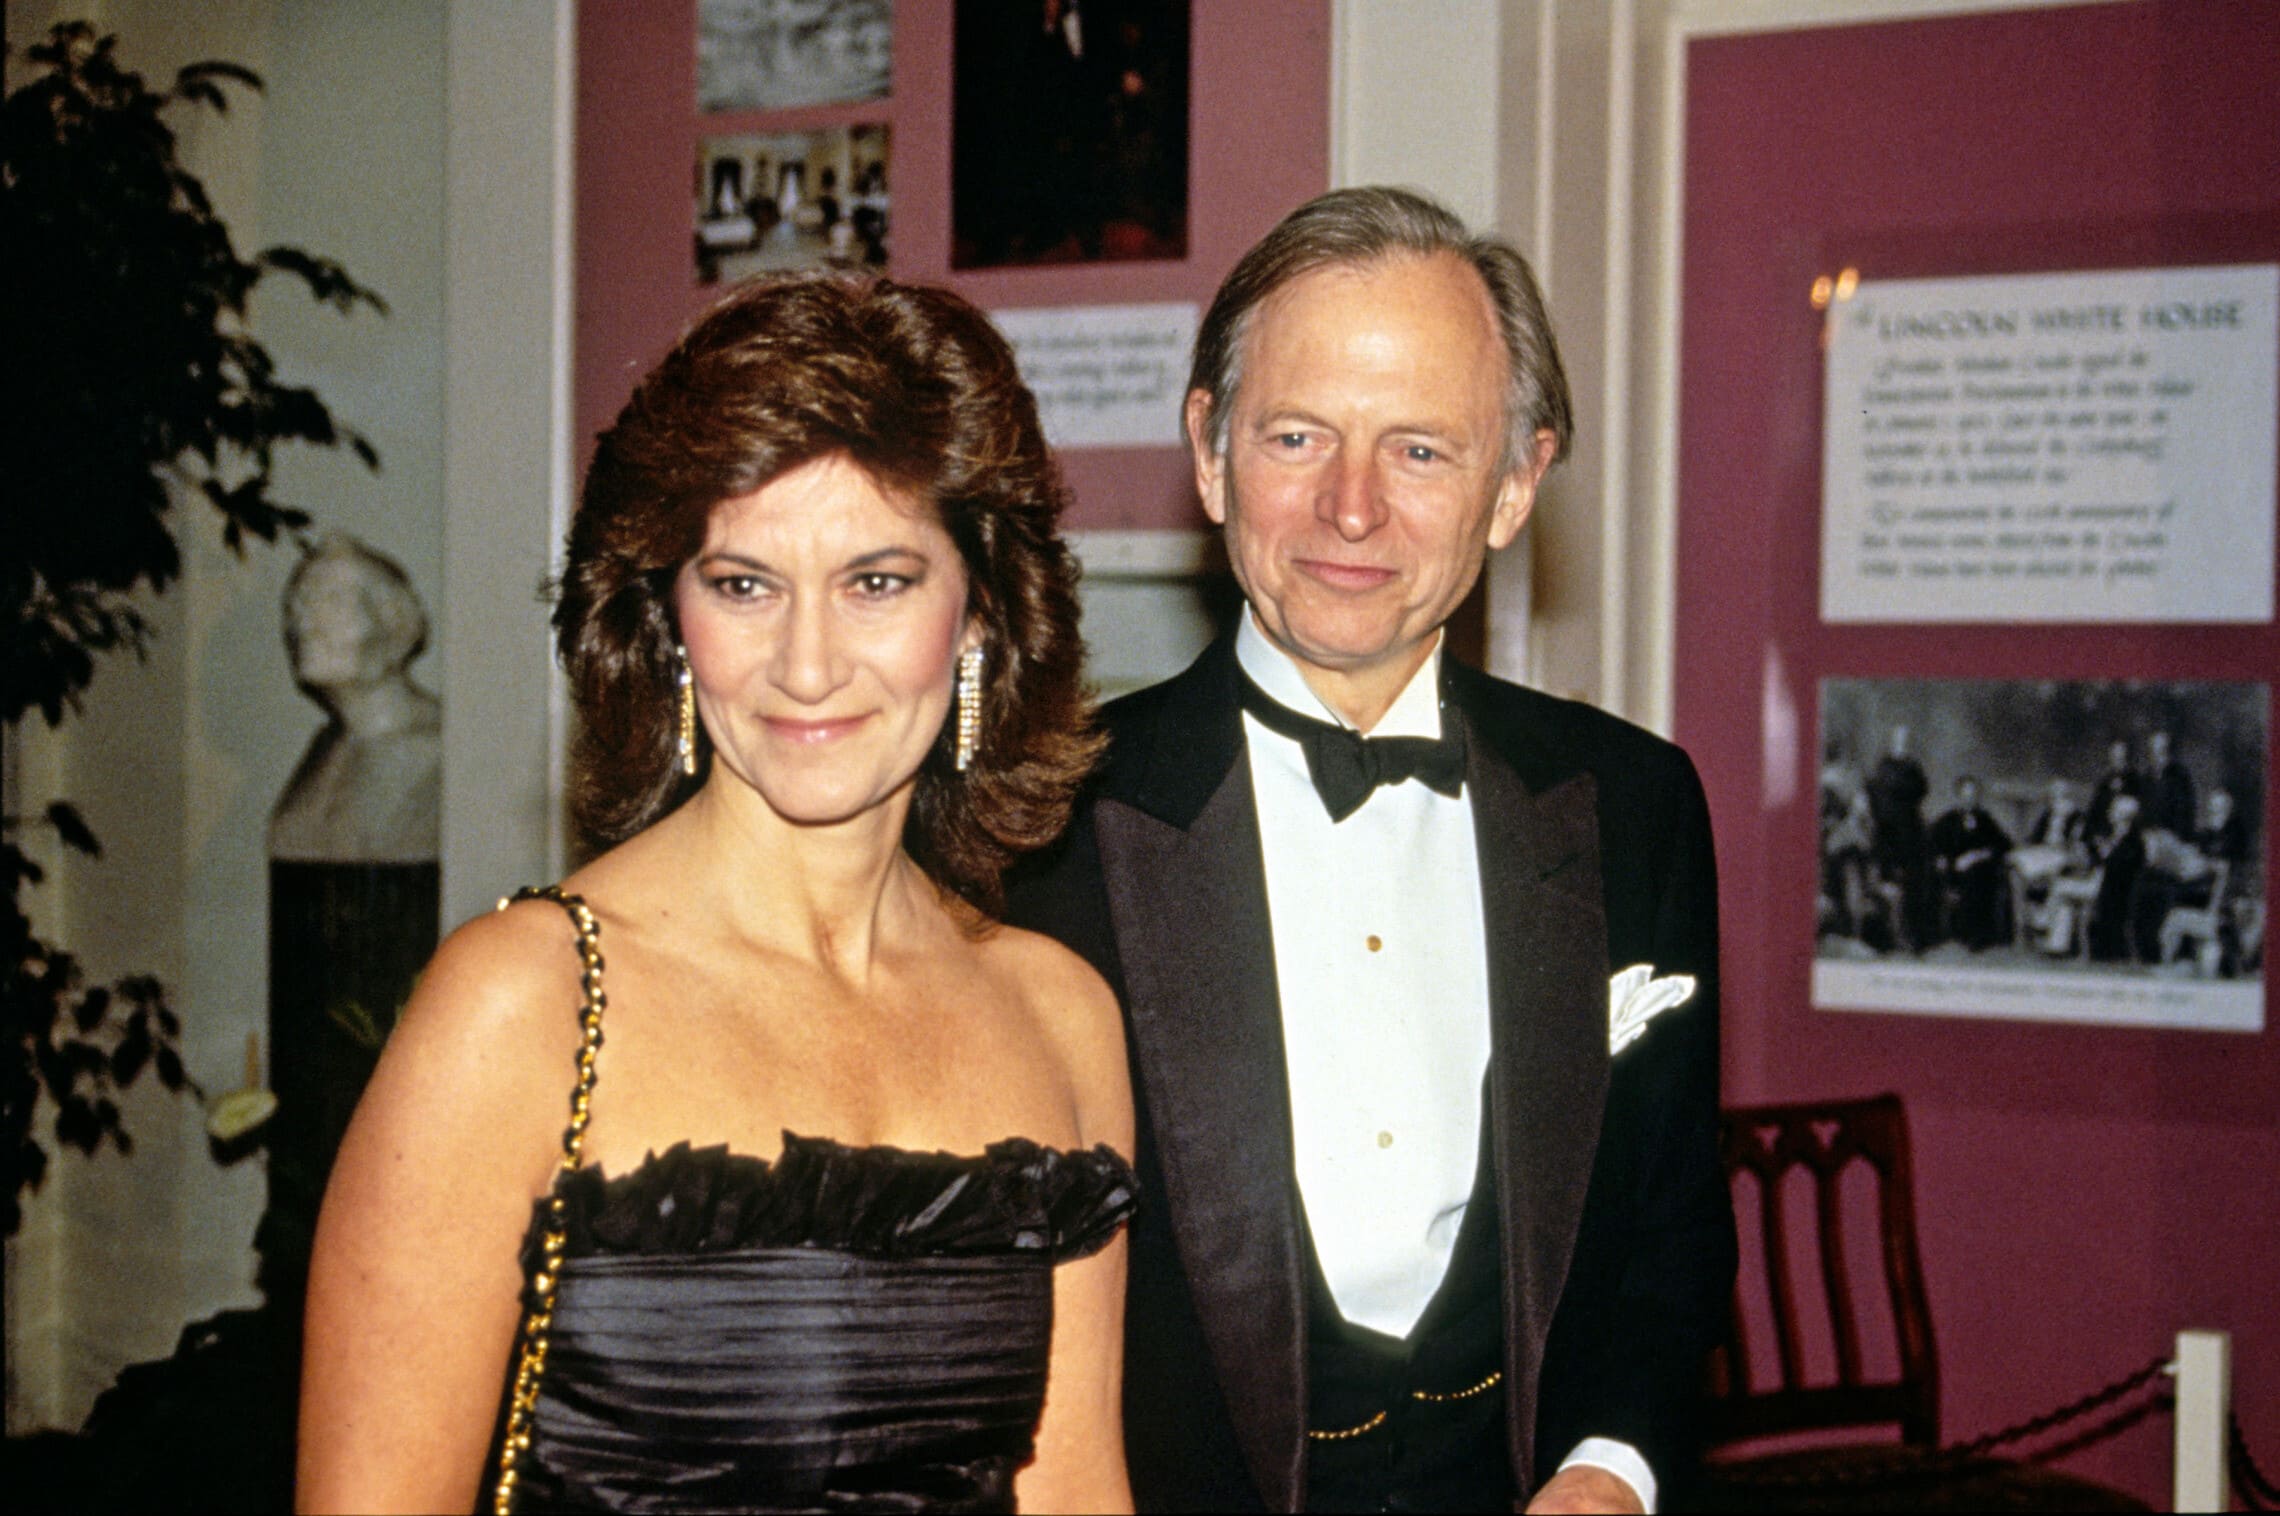 הסופר טום וולף ואישתו שילה מגיעים לארוחת ערב בבית הלבן, 16 בנובמבר 1988 (צילום: Ron Sachs / CNP/MediaPunch via Alamy)